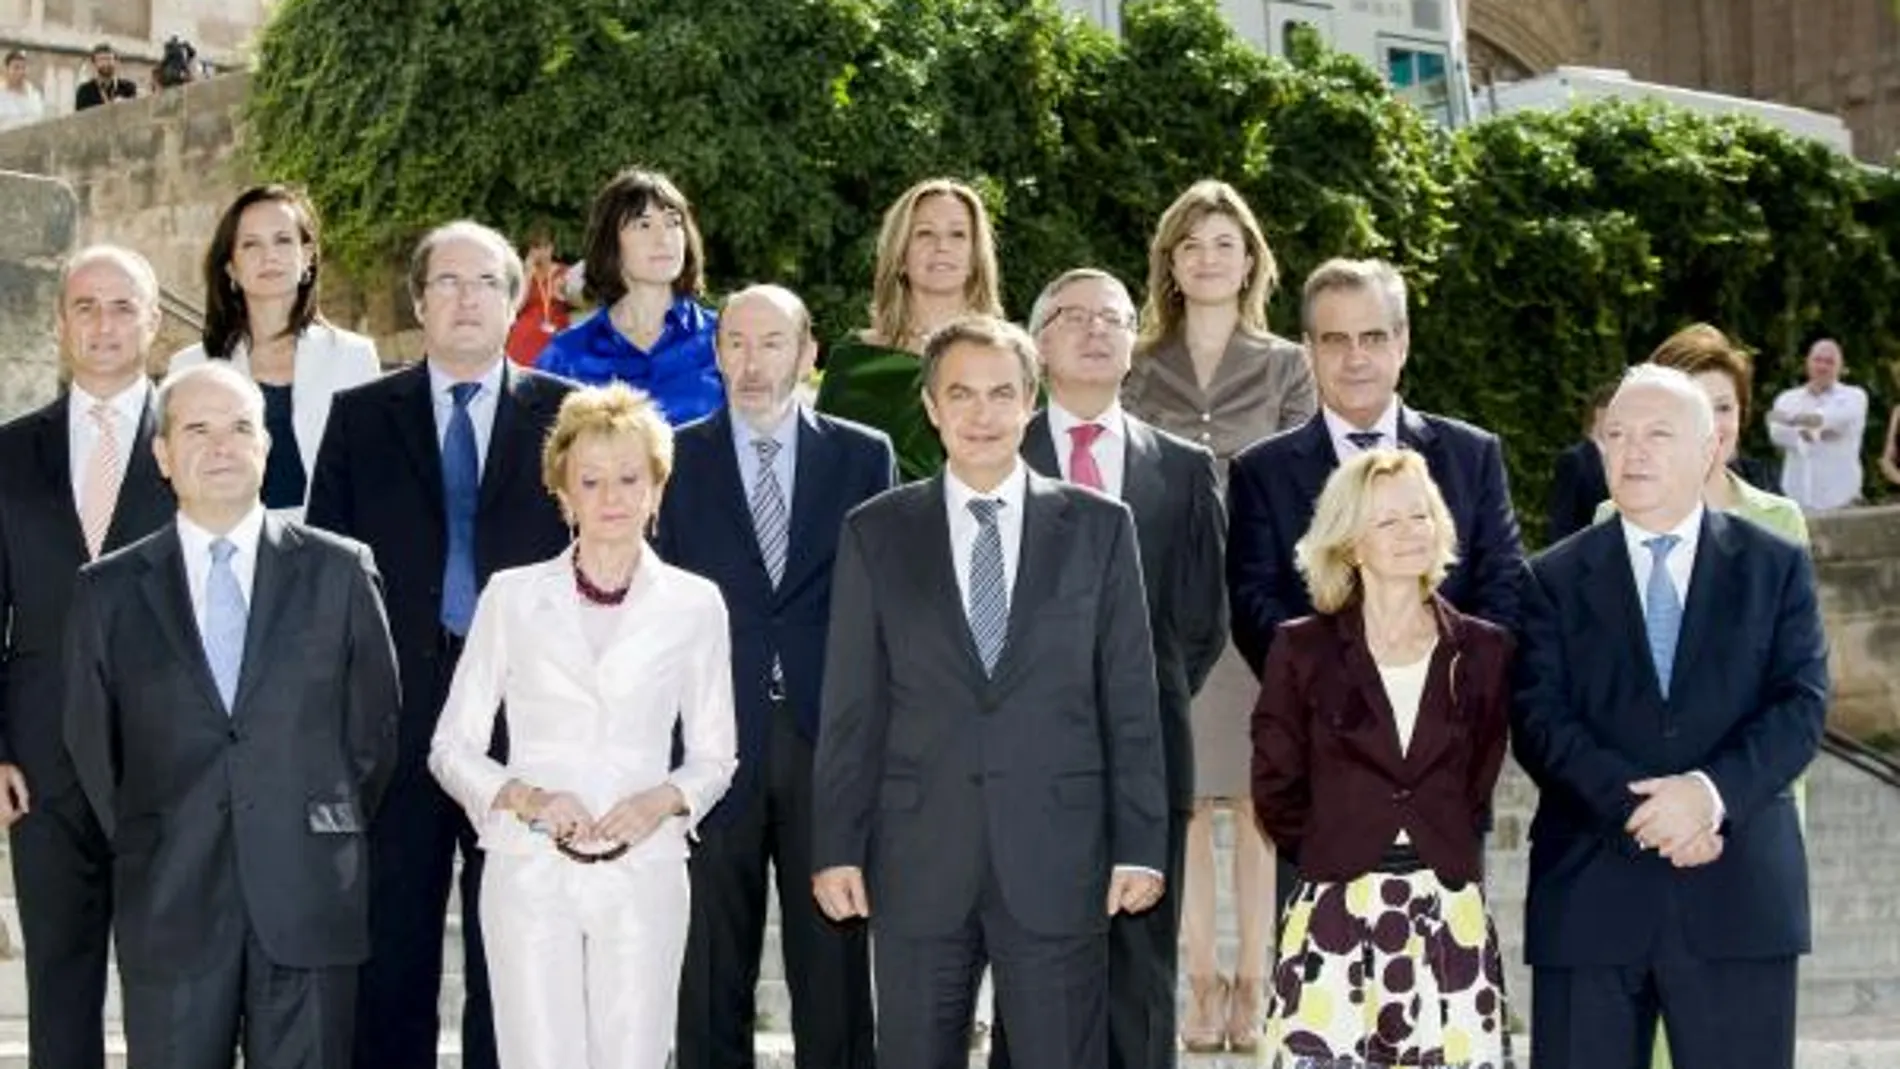 El presidente del Gobierno posa junto a los miembros de su gabinete antes de comenzar el Consejo de ministros celebrado en Palma de Mallorca